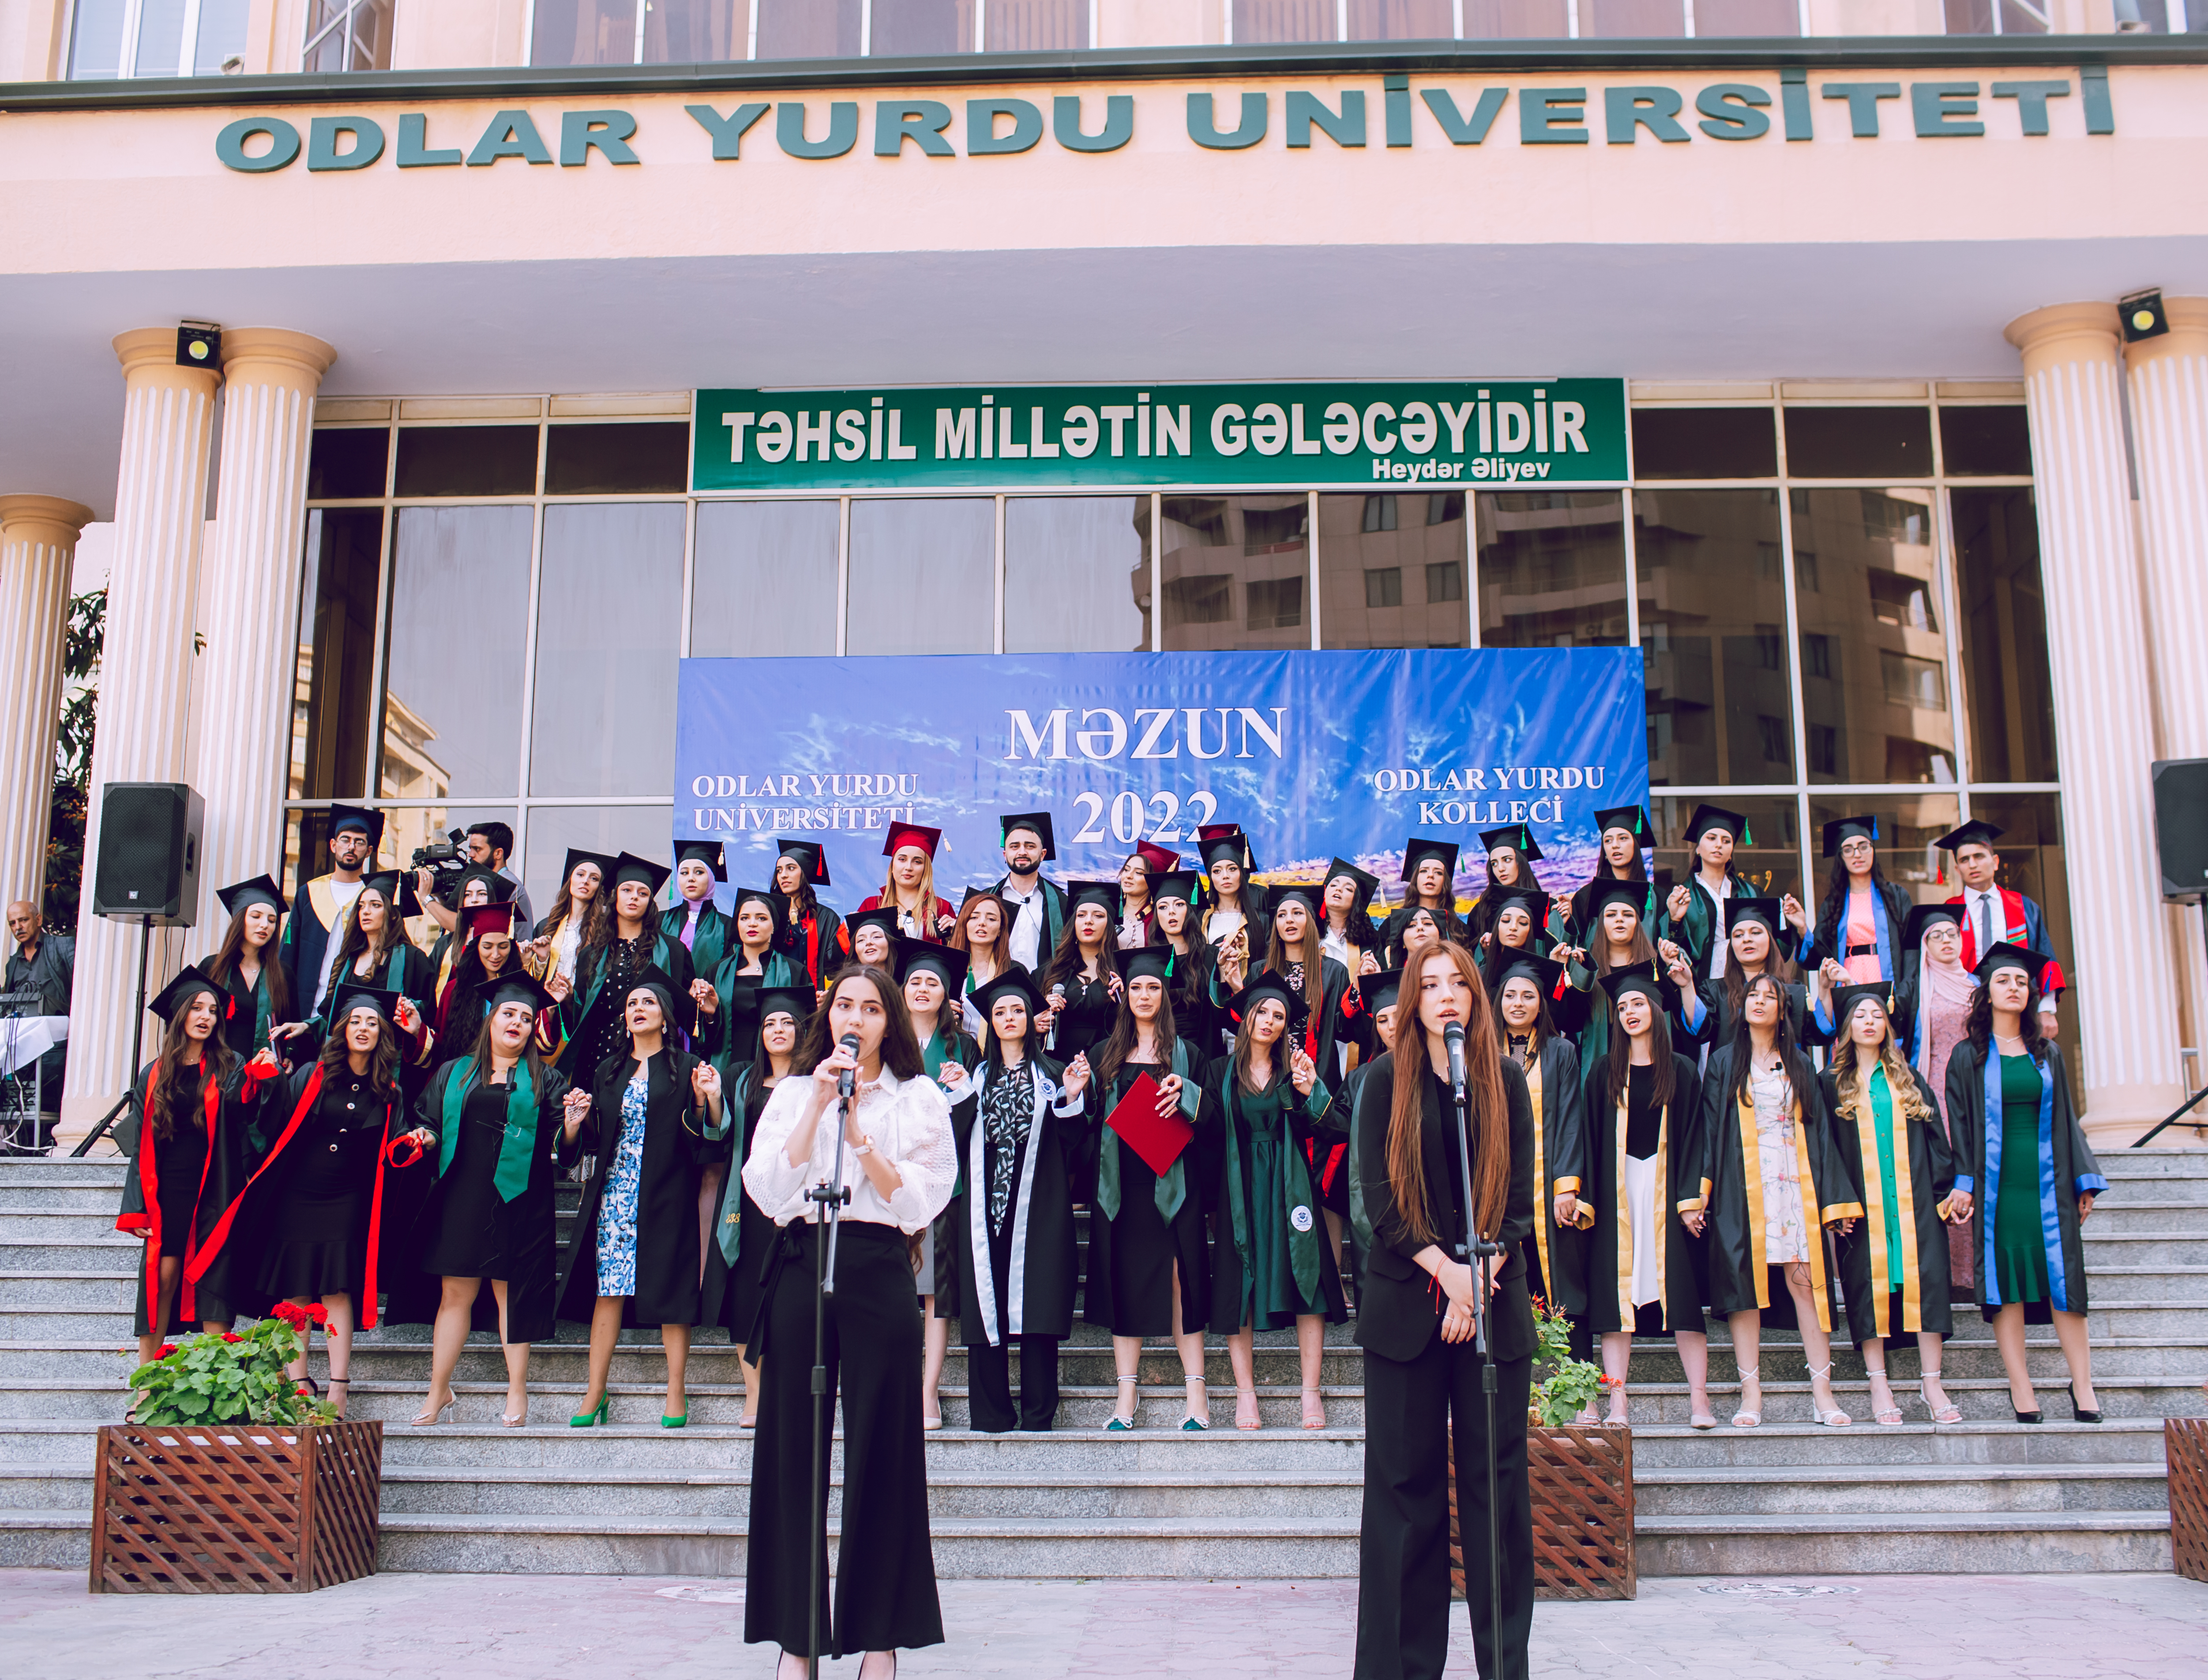 Odlar Yurdu Universitetində məzunların buraxılış mərasimi keçirilmişdir